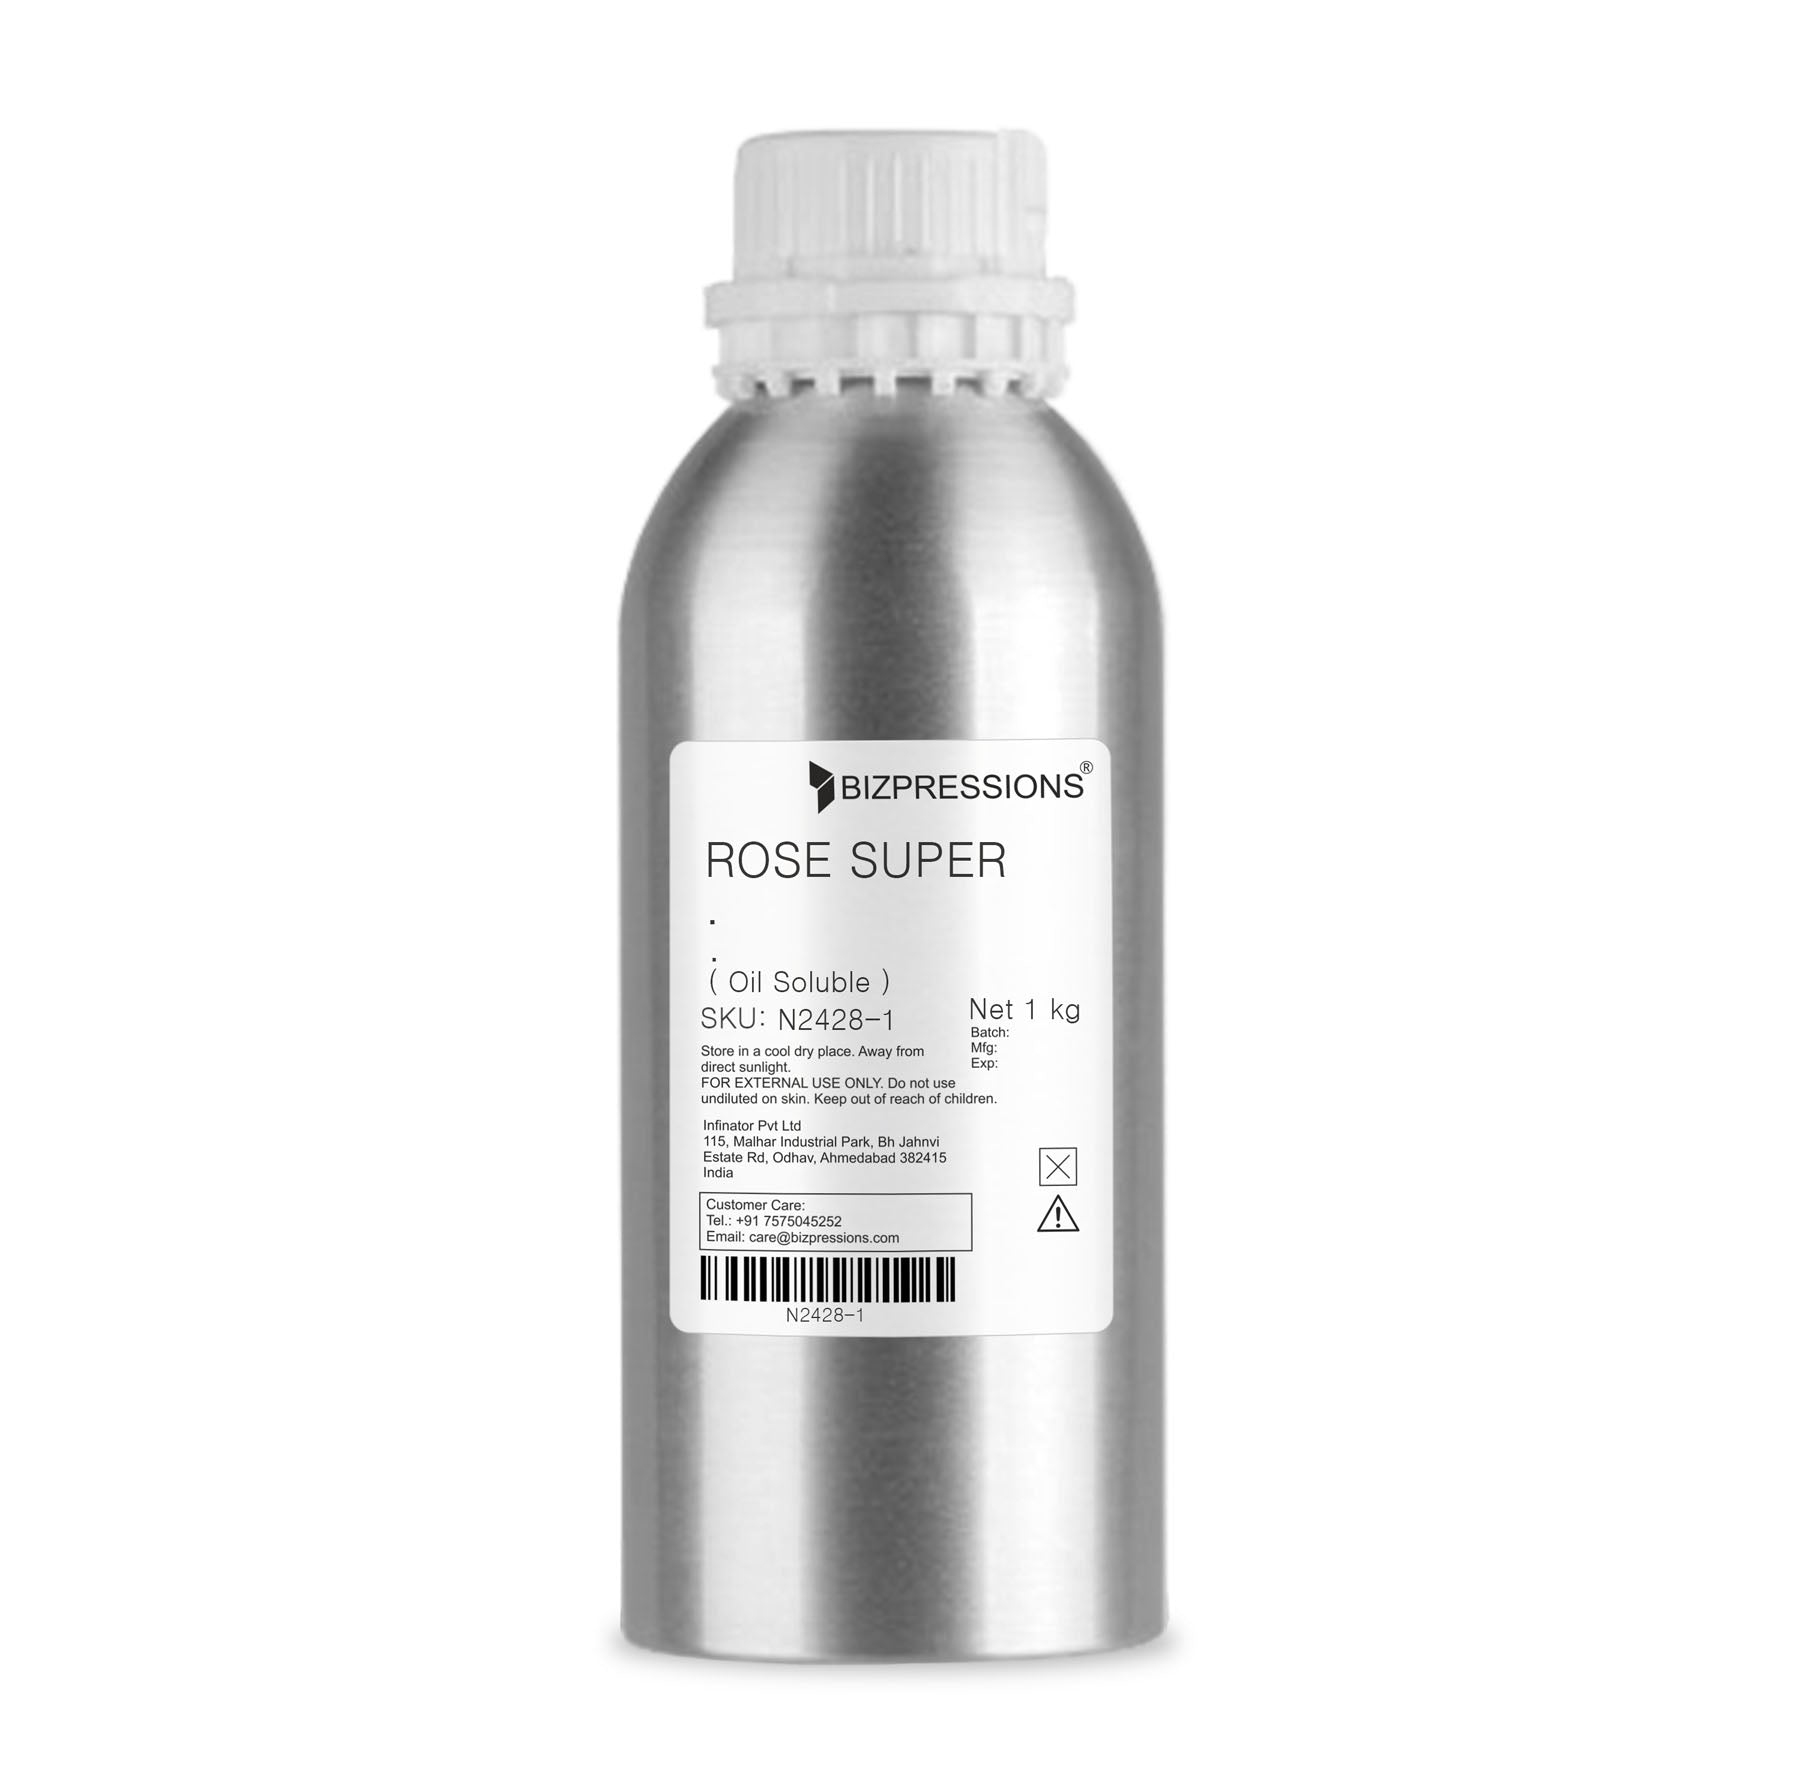 ROSE SUPER - Fragrance ( Oil Soluble ) - 1 kg